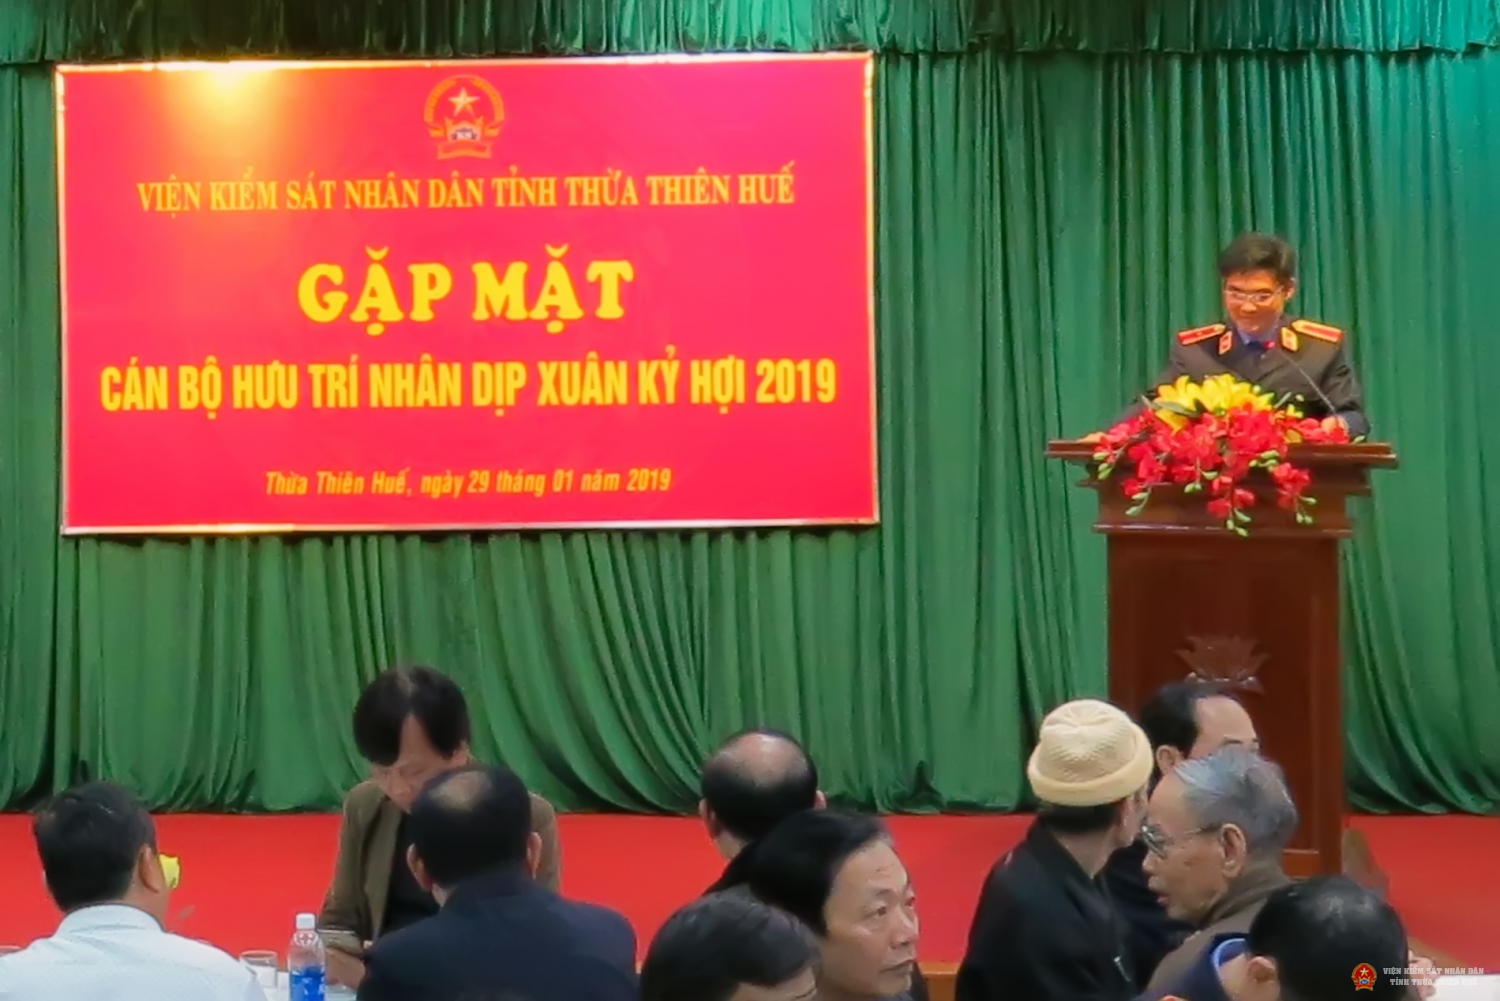 Đồng chí Nguyễn Thanh Hải, Bí thư Ban cán sự đảng, Viện trưởng Viện kiểm sát nhân dân tỉnh Thừa Thiên Huế phát biểu tại buổi gặp mặt.